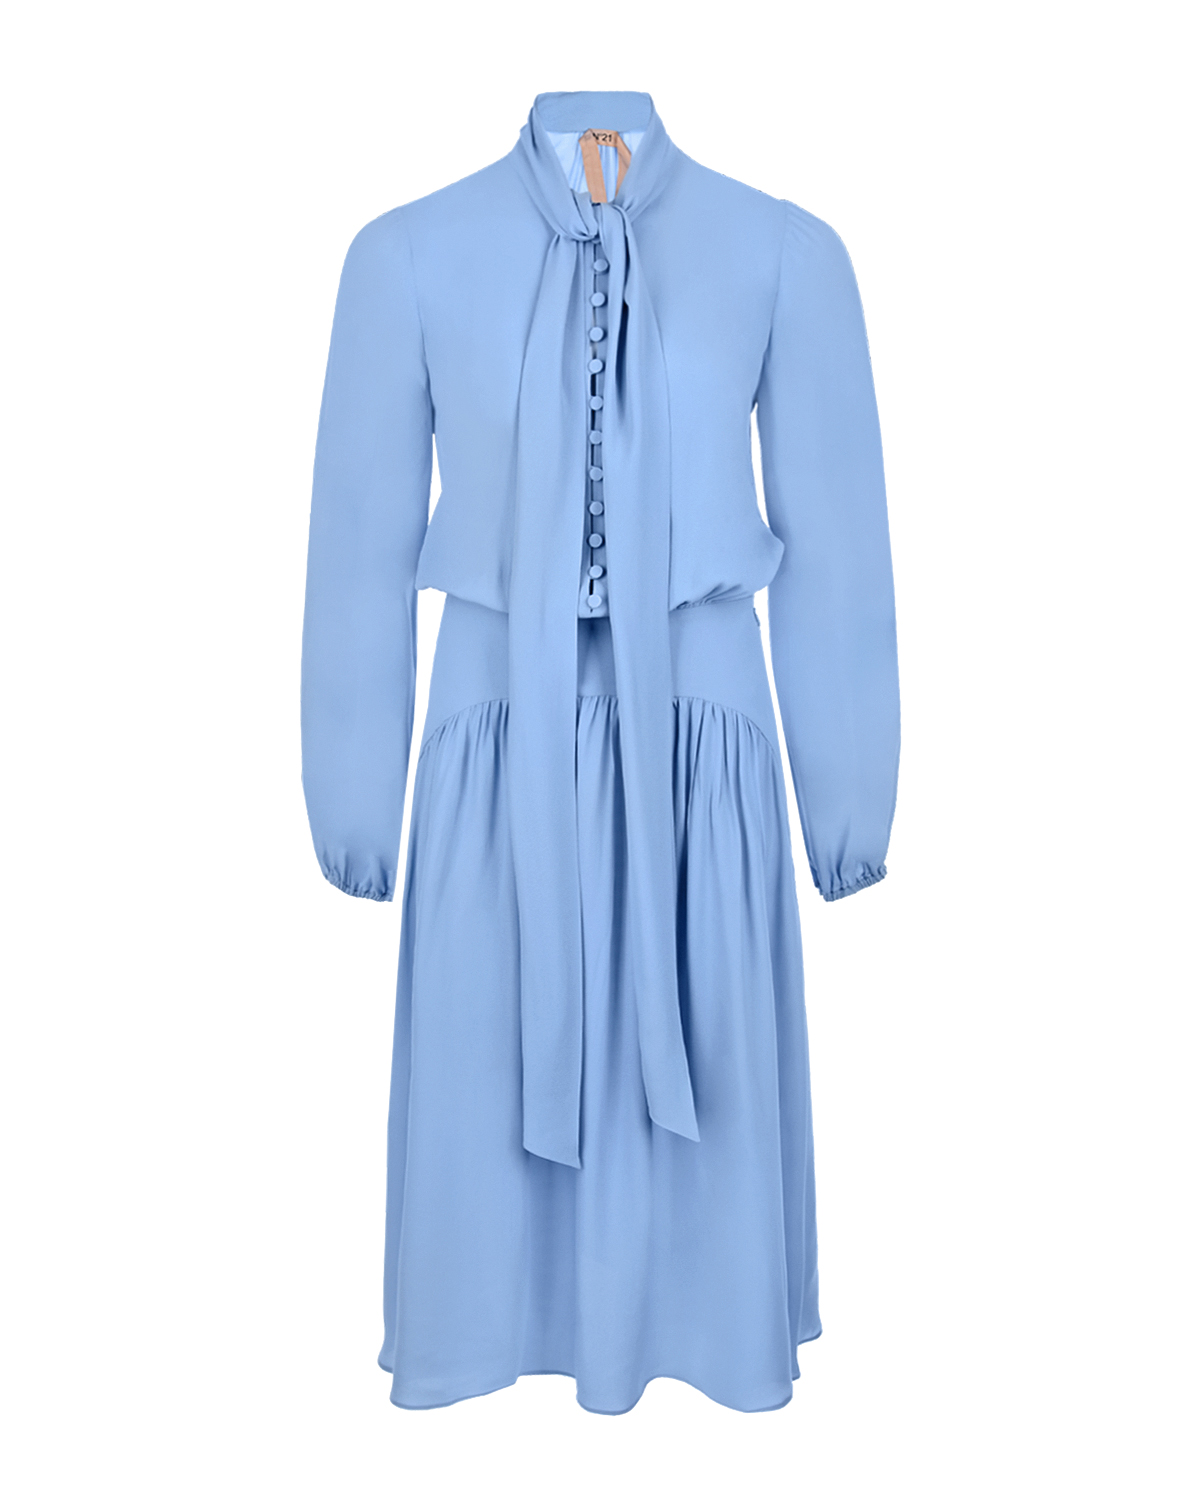 Голубое платье с бантом No. 21, размер 40, цвет голубой - фото 1